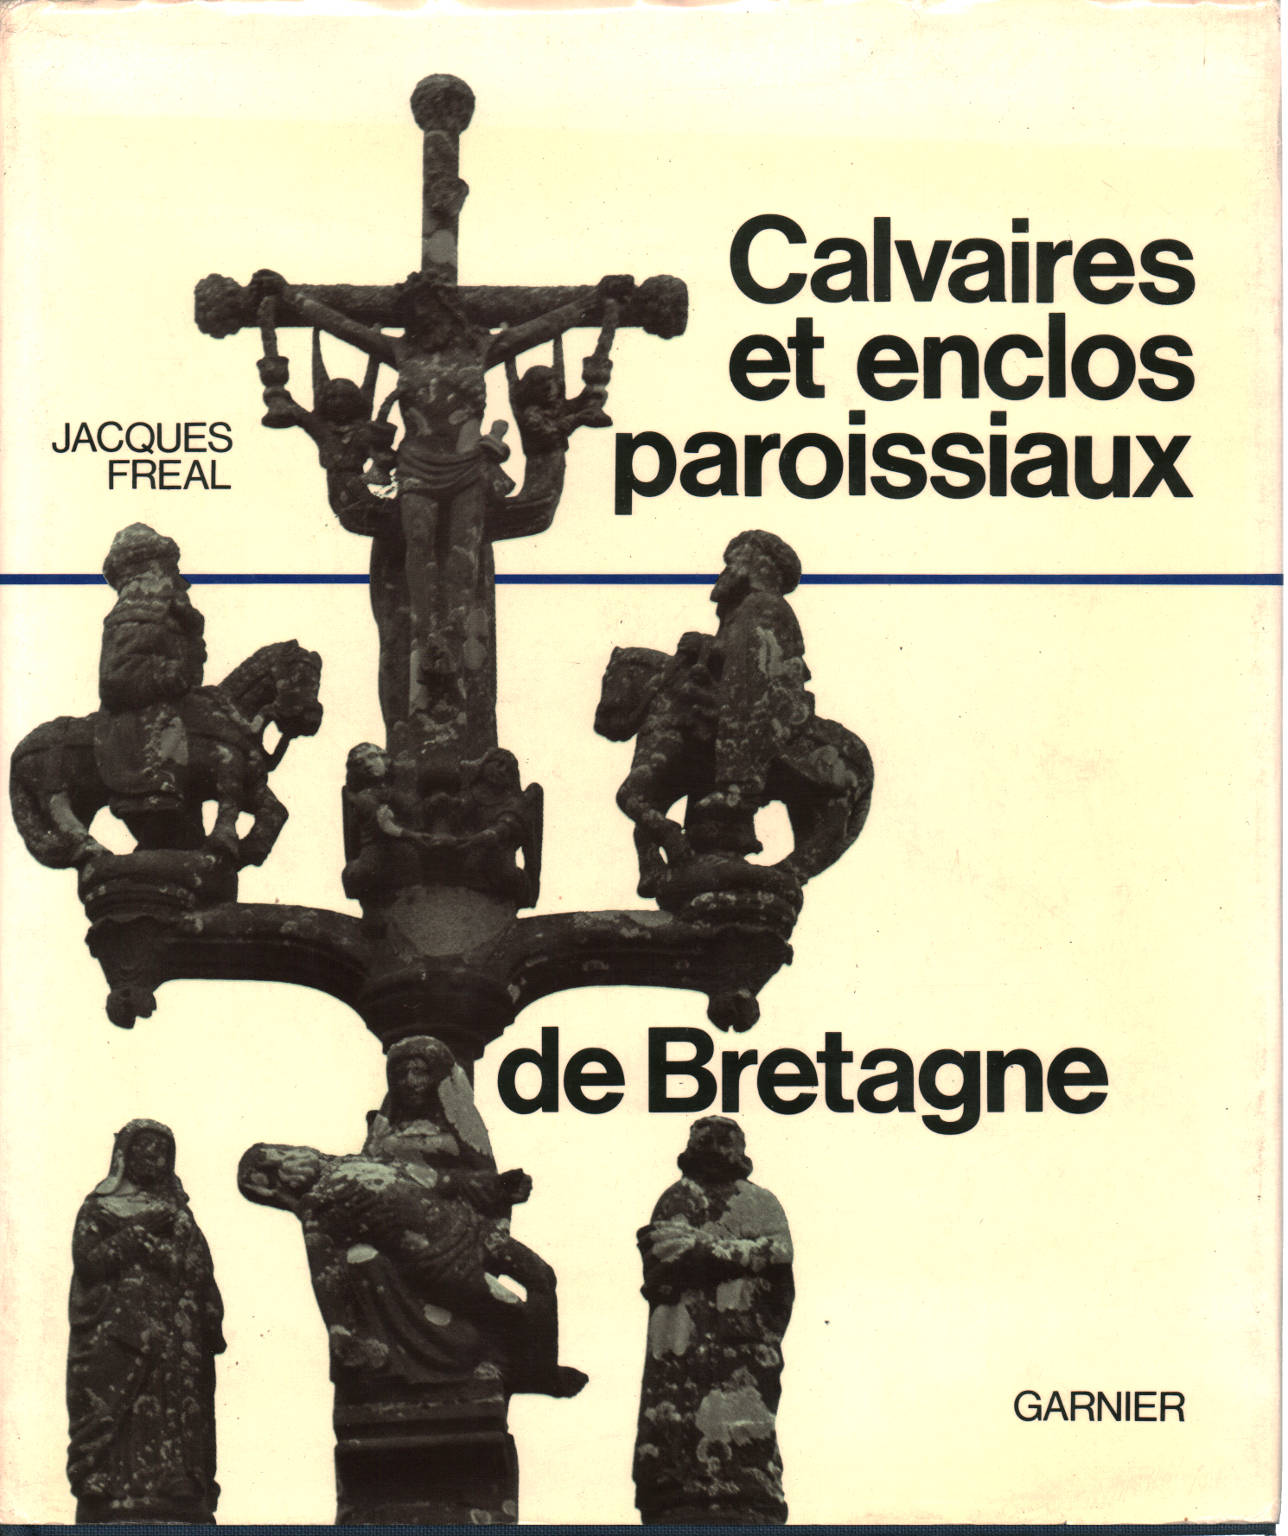 Calvaires et enclos paroissiaux de Bretagne, Jacques Fréal